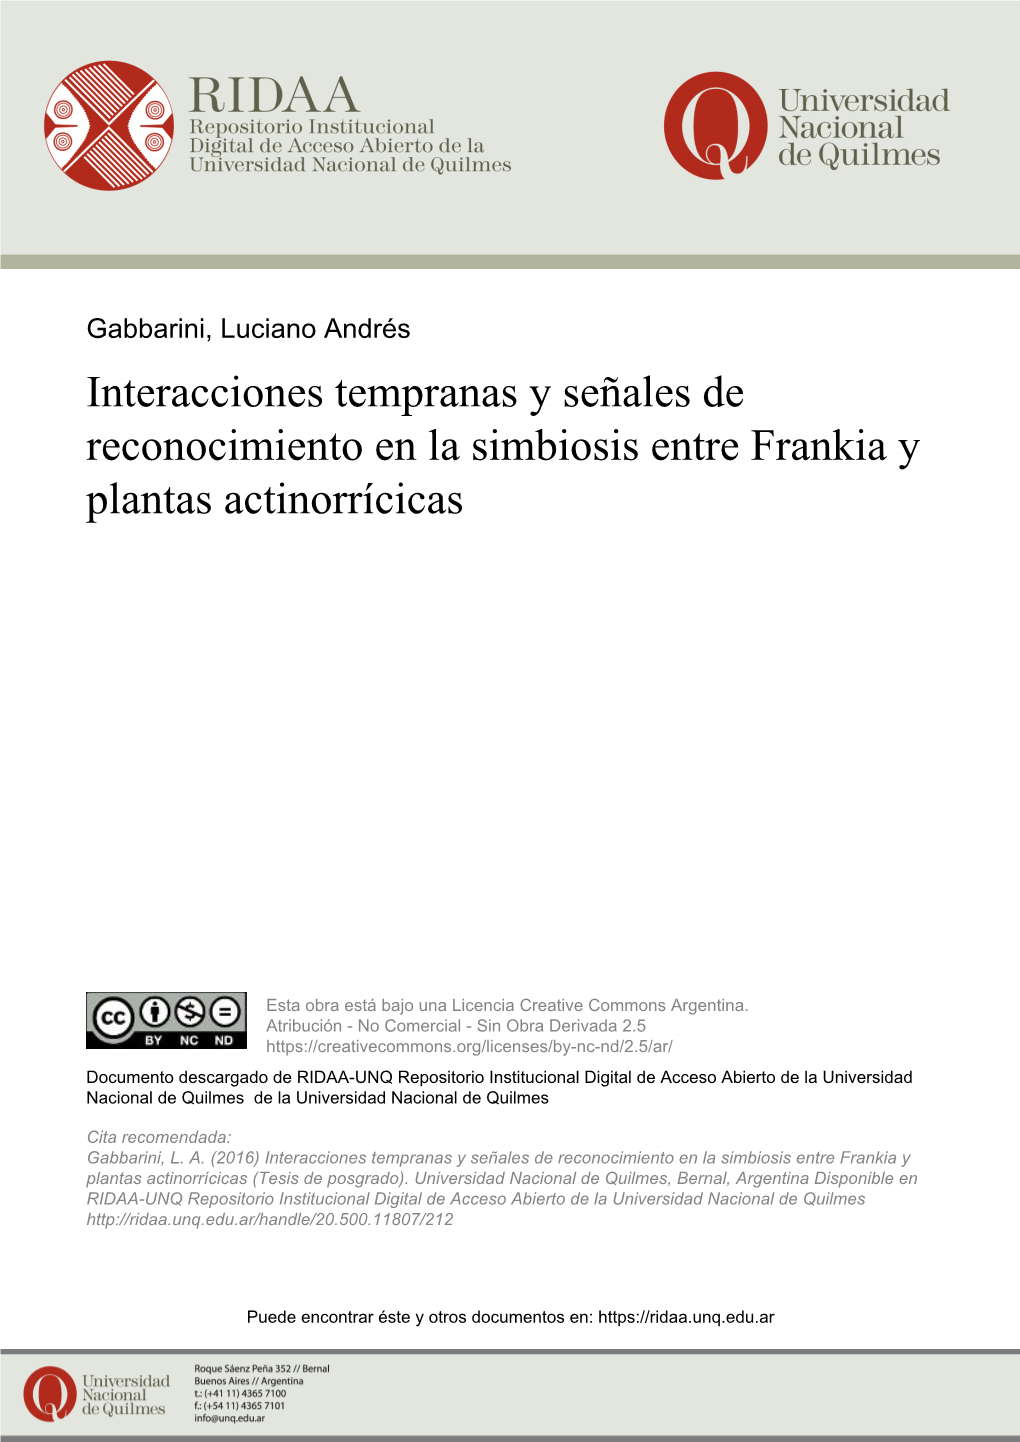 Interacciones Tempranas Y Señales De Reconocimiento En La Simbiosis Entre Frankia Y Plantas Actinorrícicas